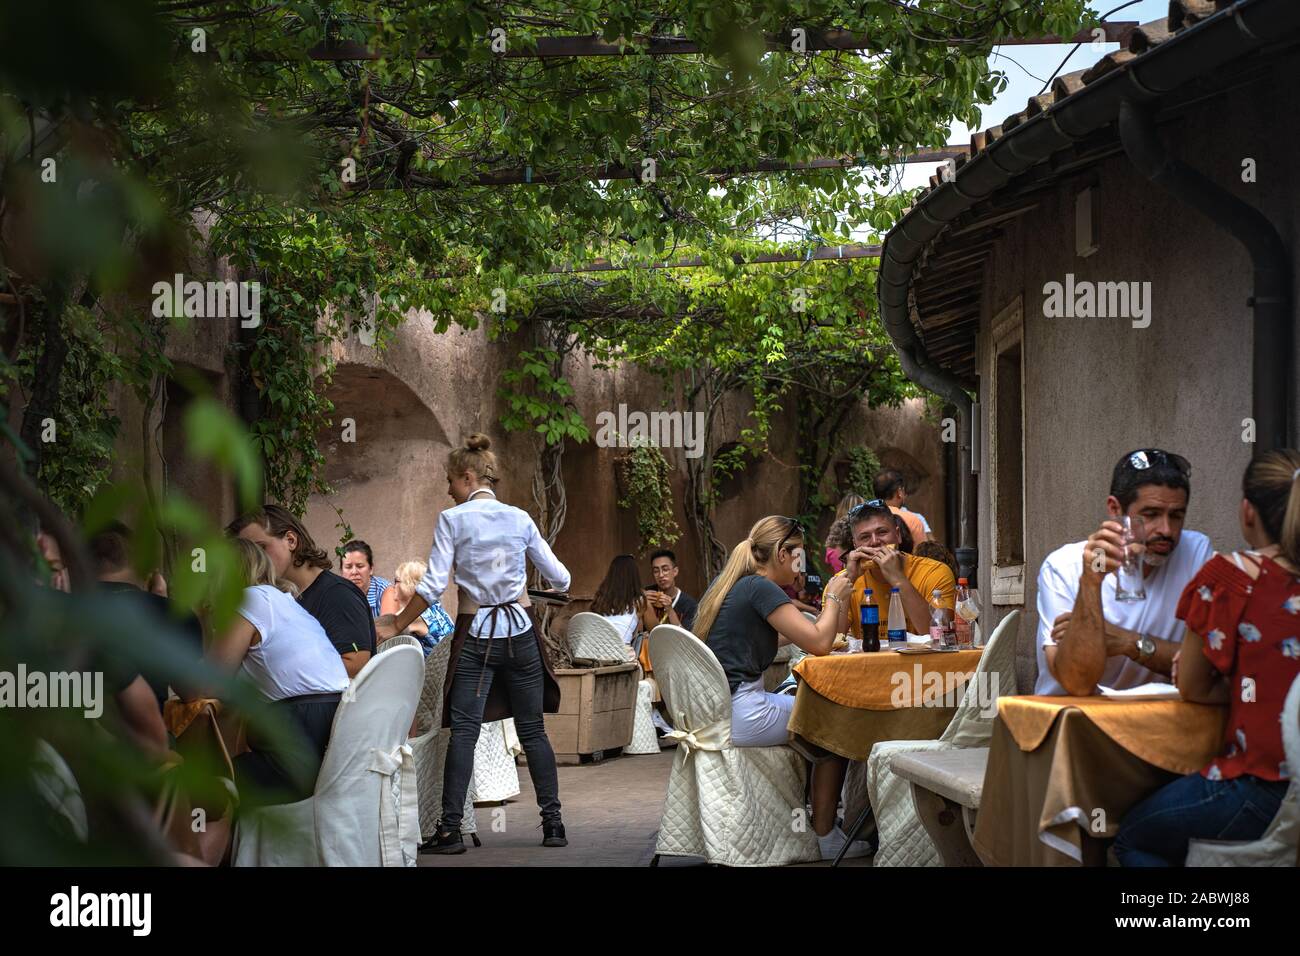 Los turistas en el bar en el interior del castillo de Sant'Angelo. Hermosa foto de gente disfrutando en el bar italiano. El camarero está sirviendo. Foto de stock